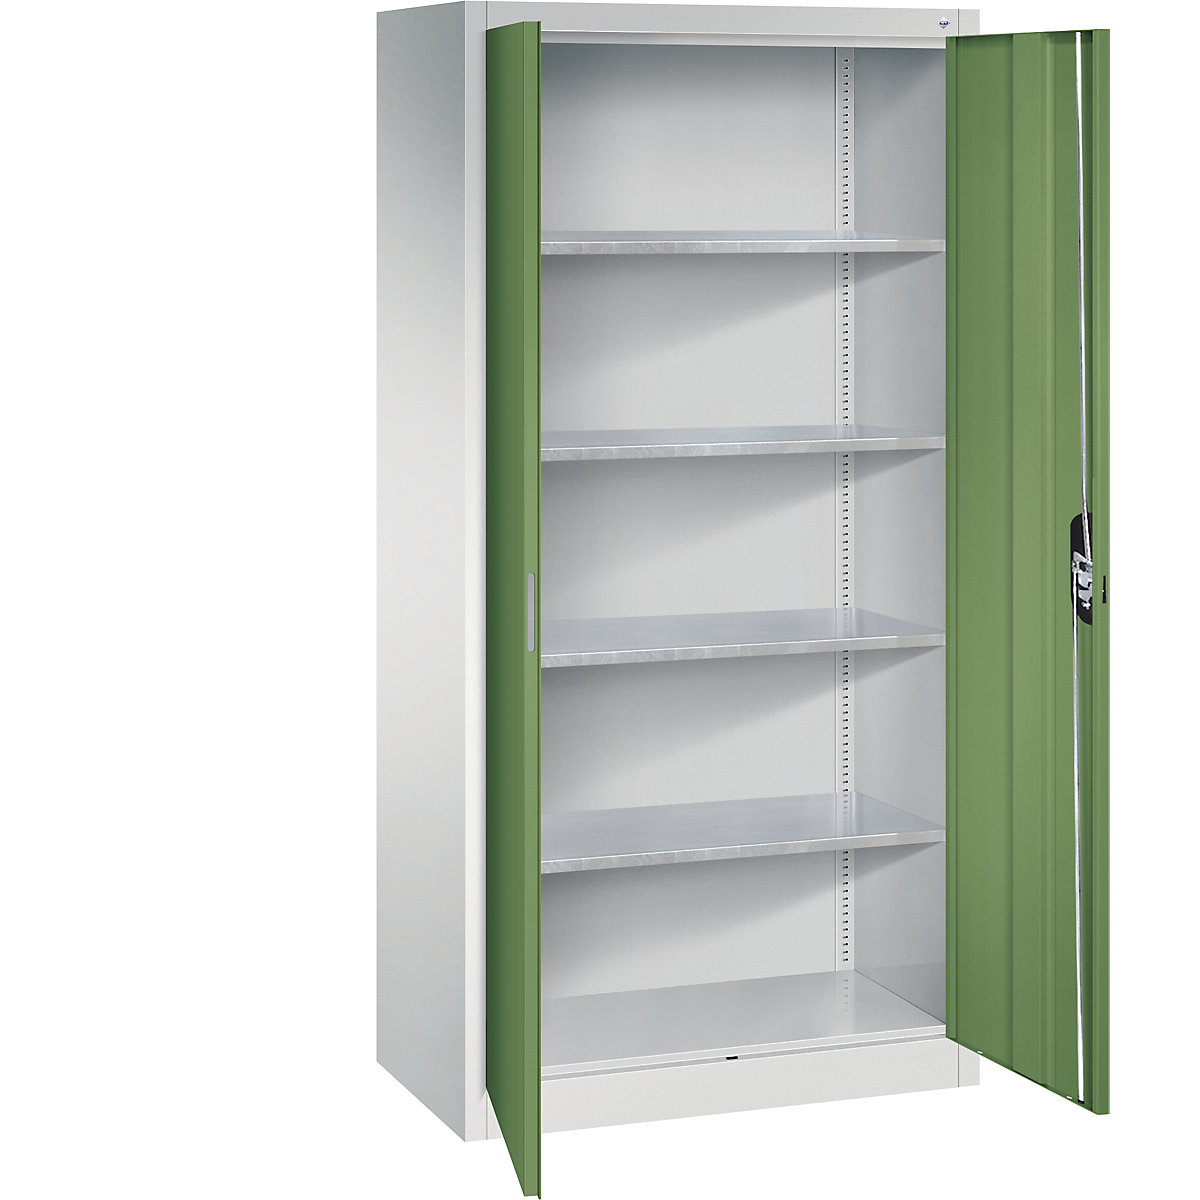 Dílenská skříň s otočnými dveřmi – C+P, v x š x h 1950 x 930 x 500 mm, světlá šedá / rezedová zelená-12